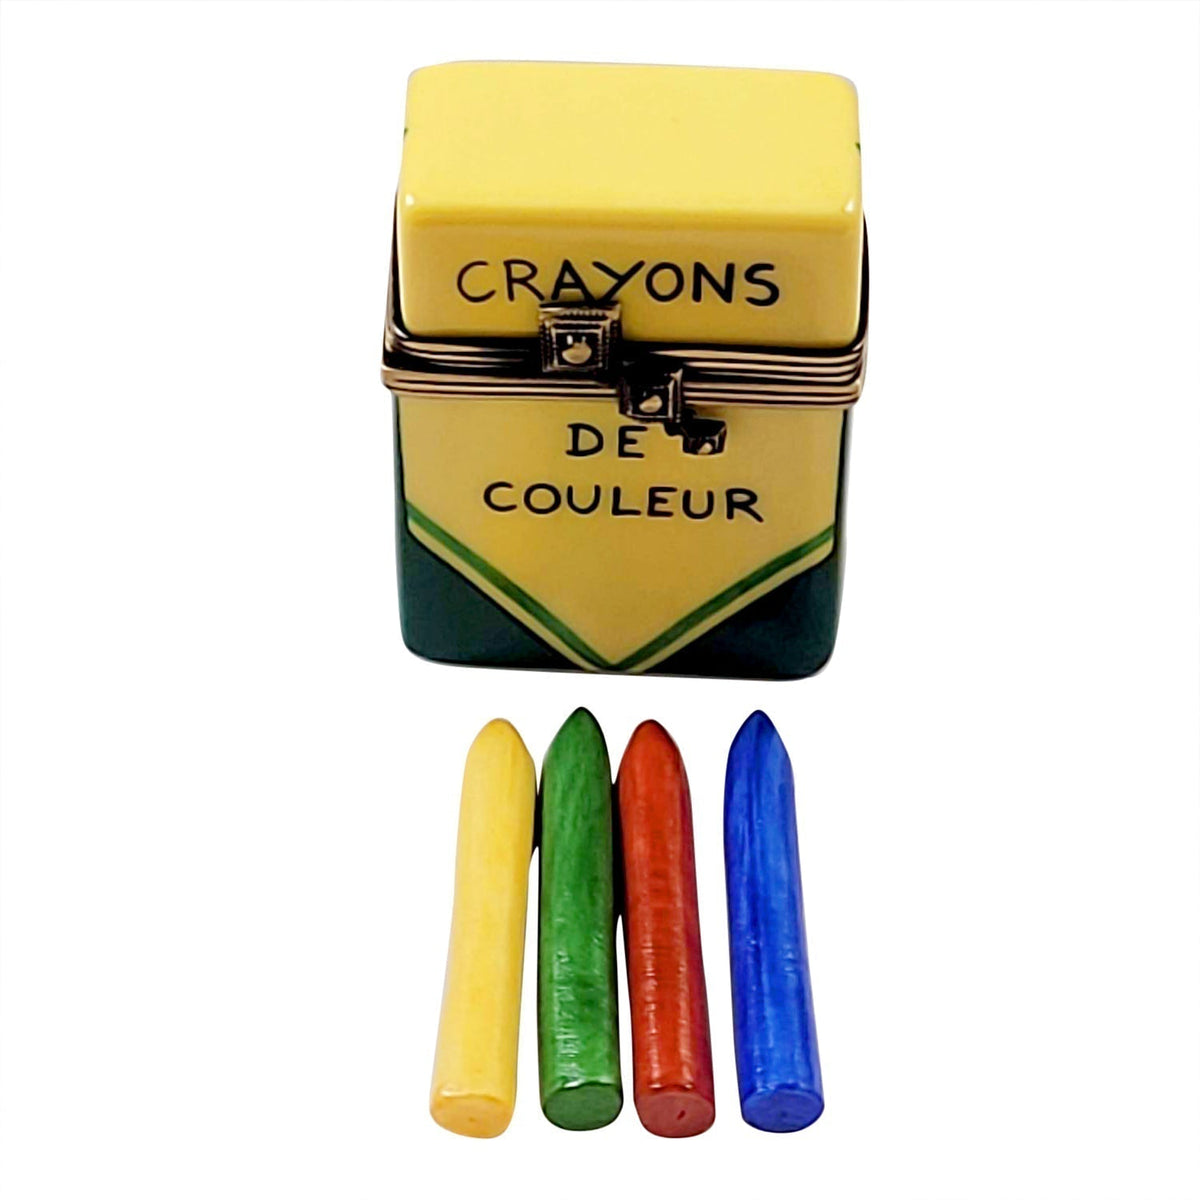 https://limogesbox.com/cdn/shop/products/crayon-box-limoges-box-873705_1200x.jpg?v=1668508854